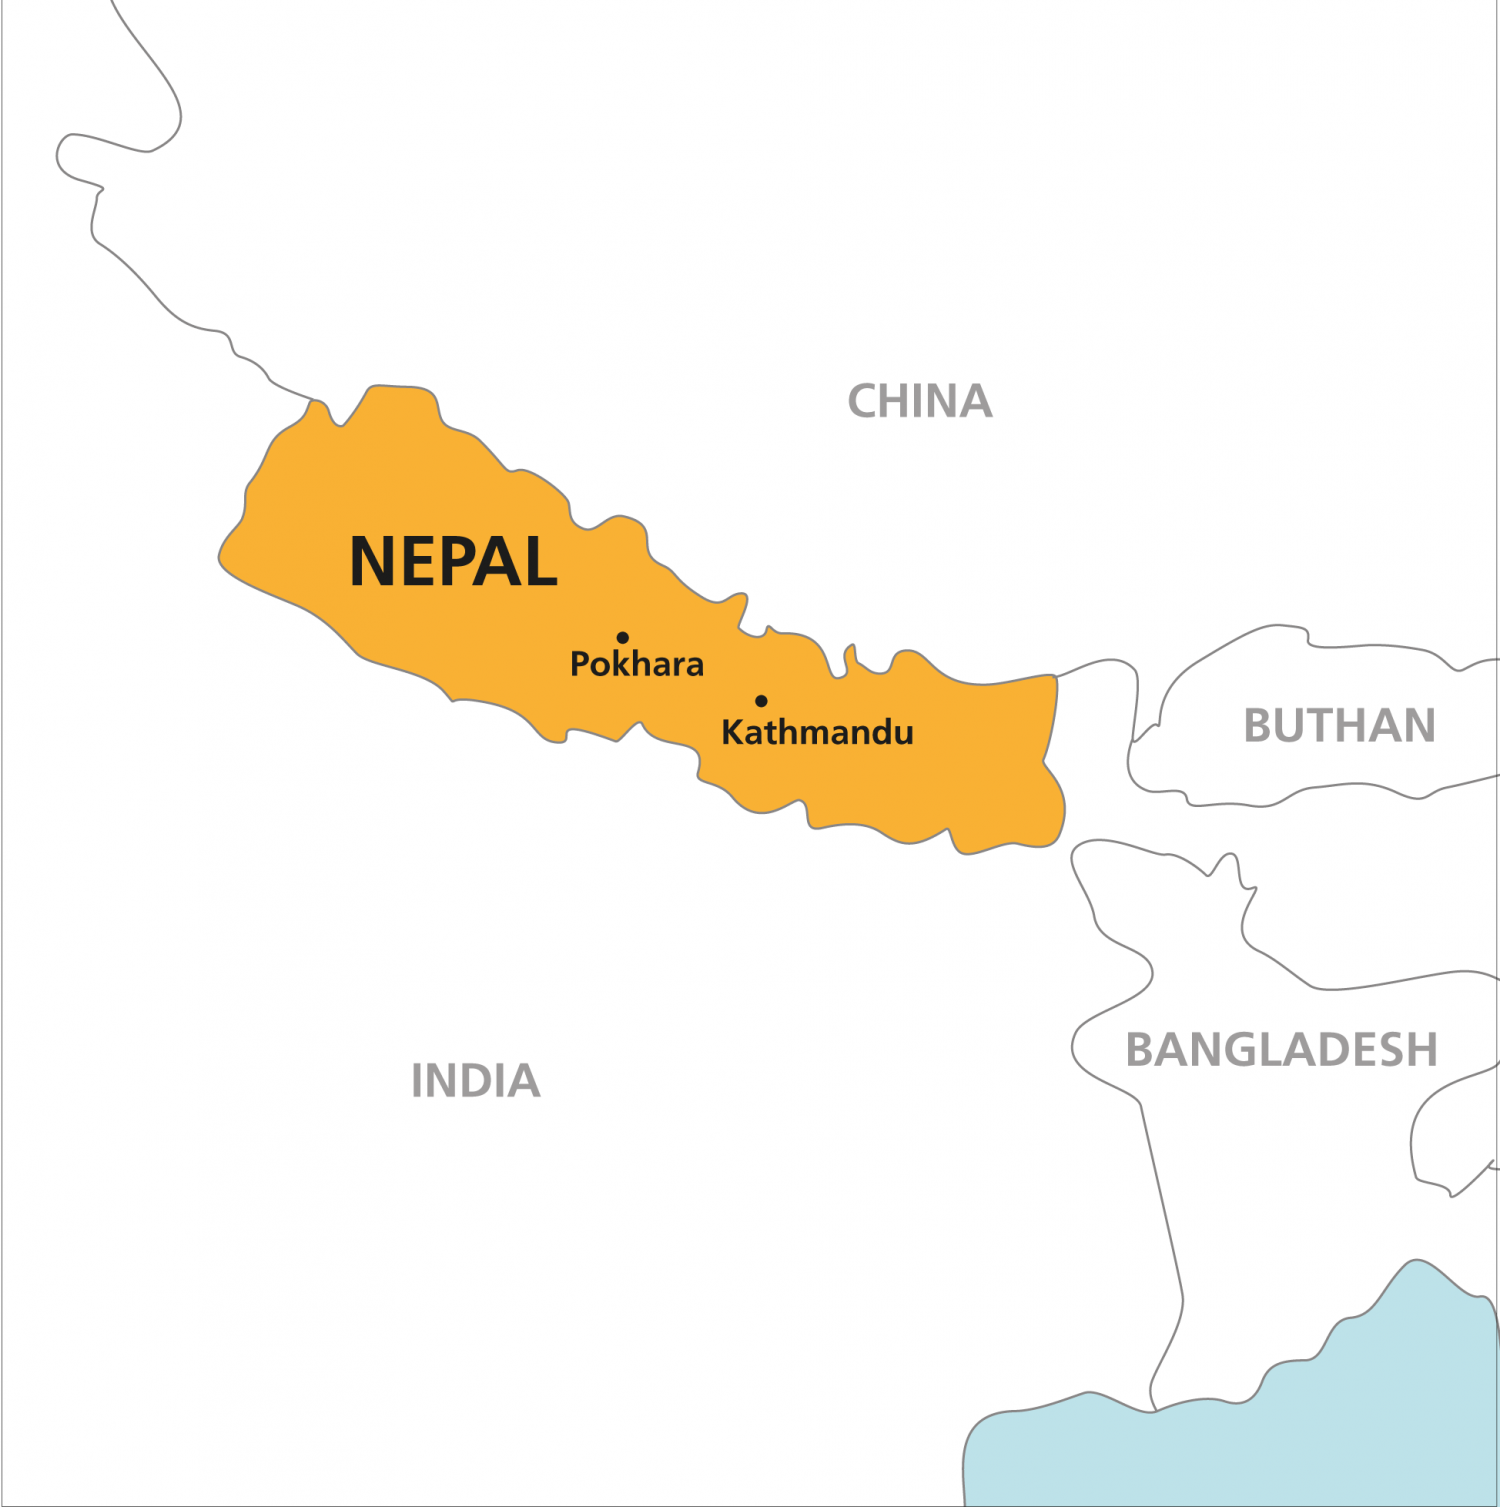 Nepal & India